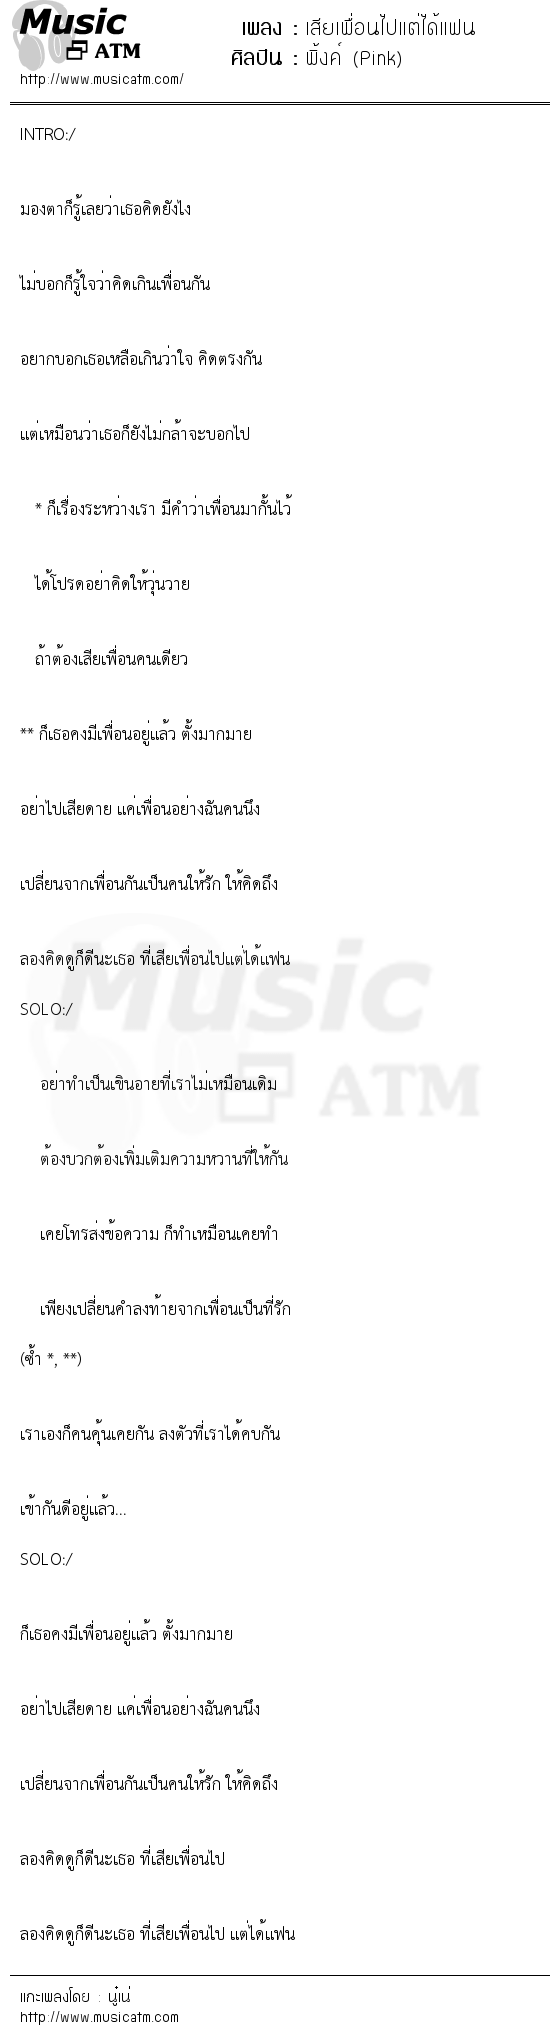 เนื้อเพลง เสียเพื่อนไปแต่ได้แฟน - พิ้งค์ (Pink) | เพลงไทย